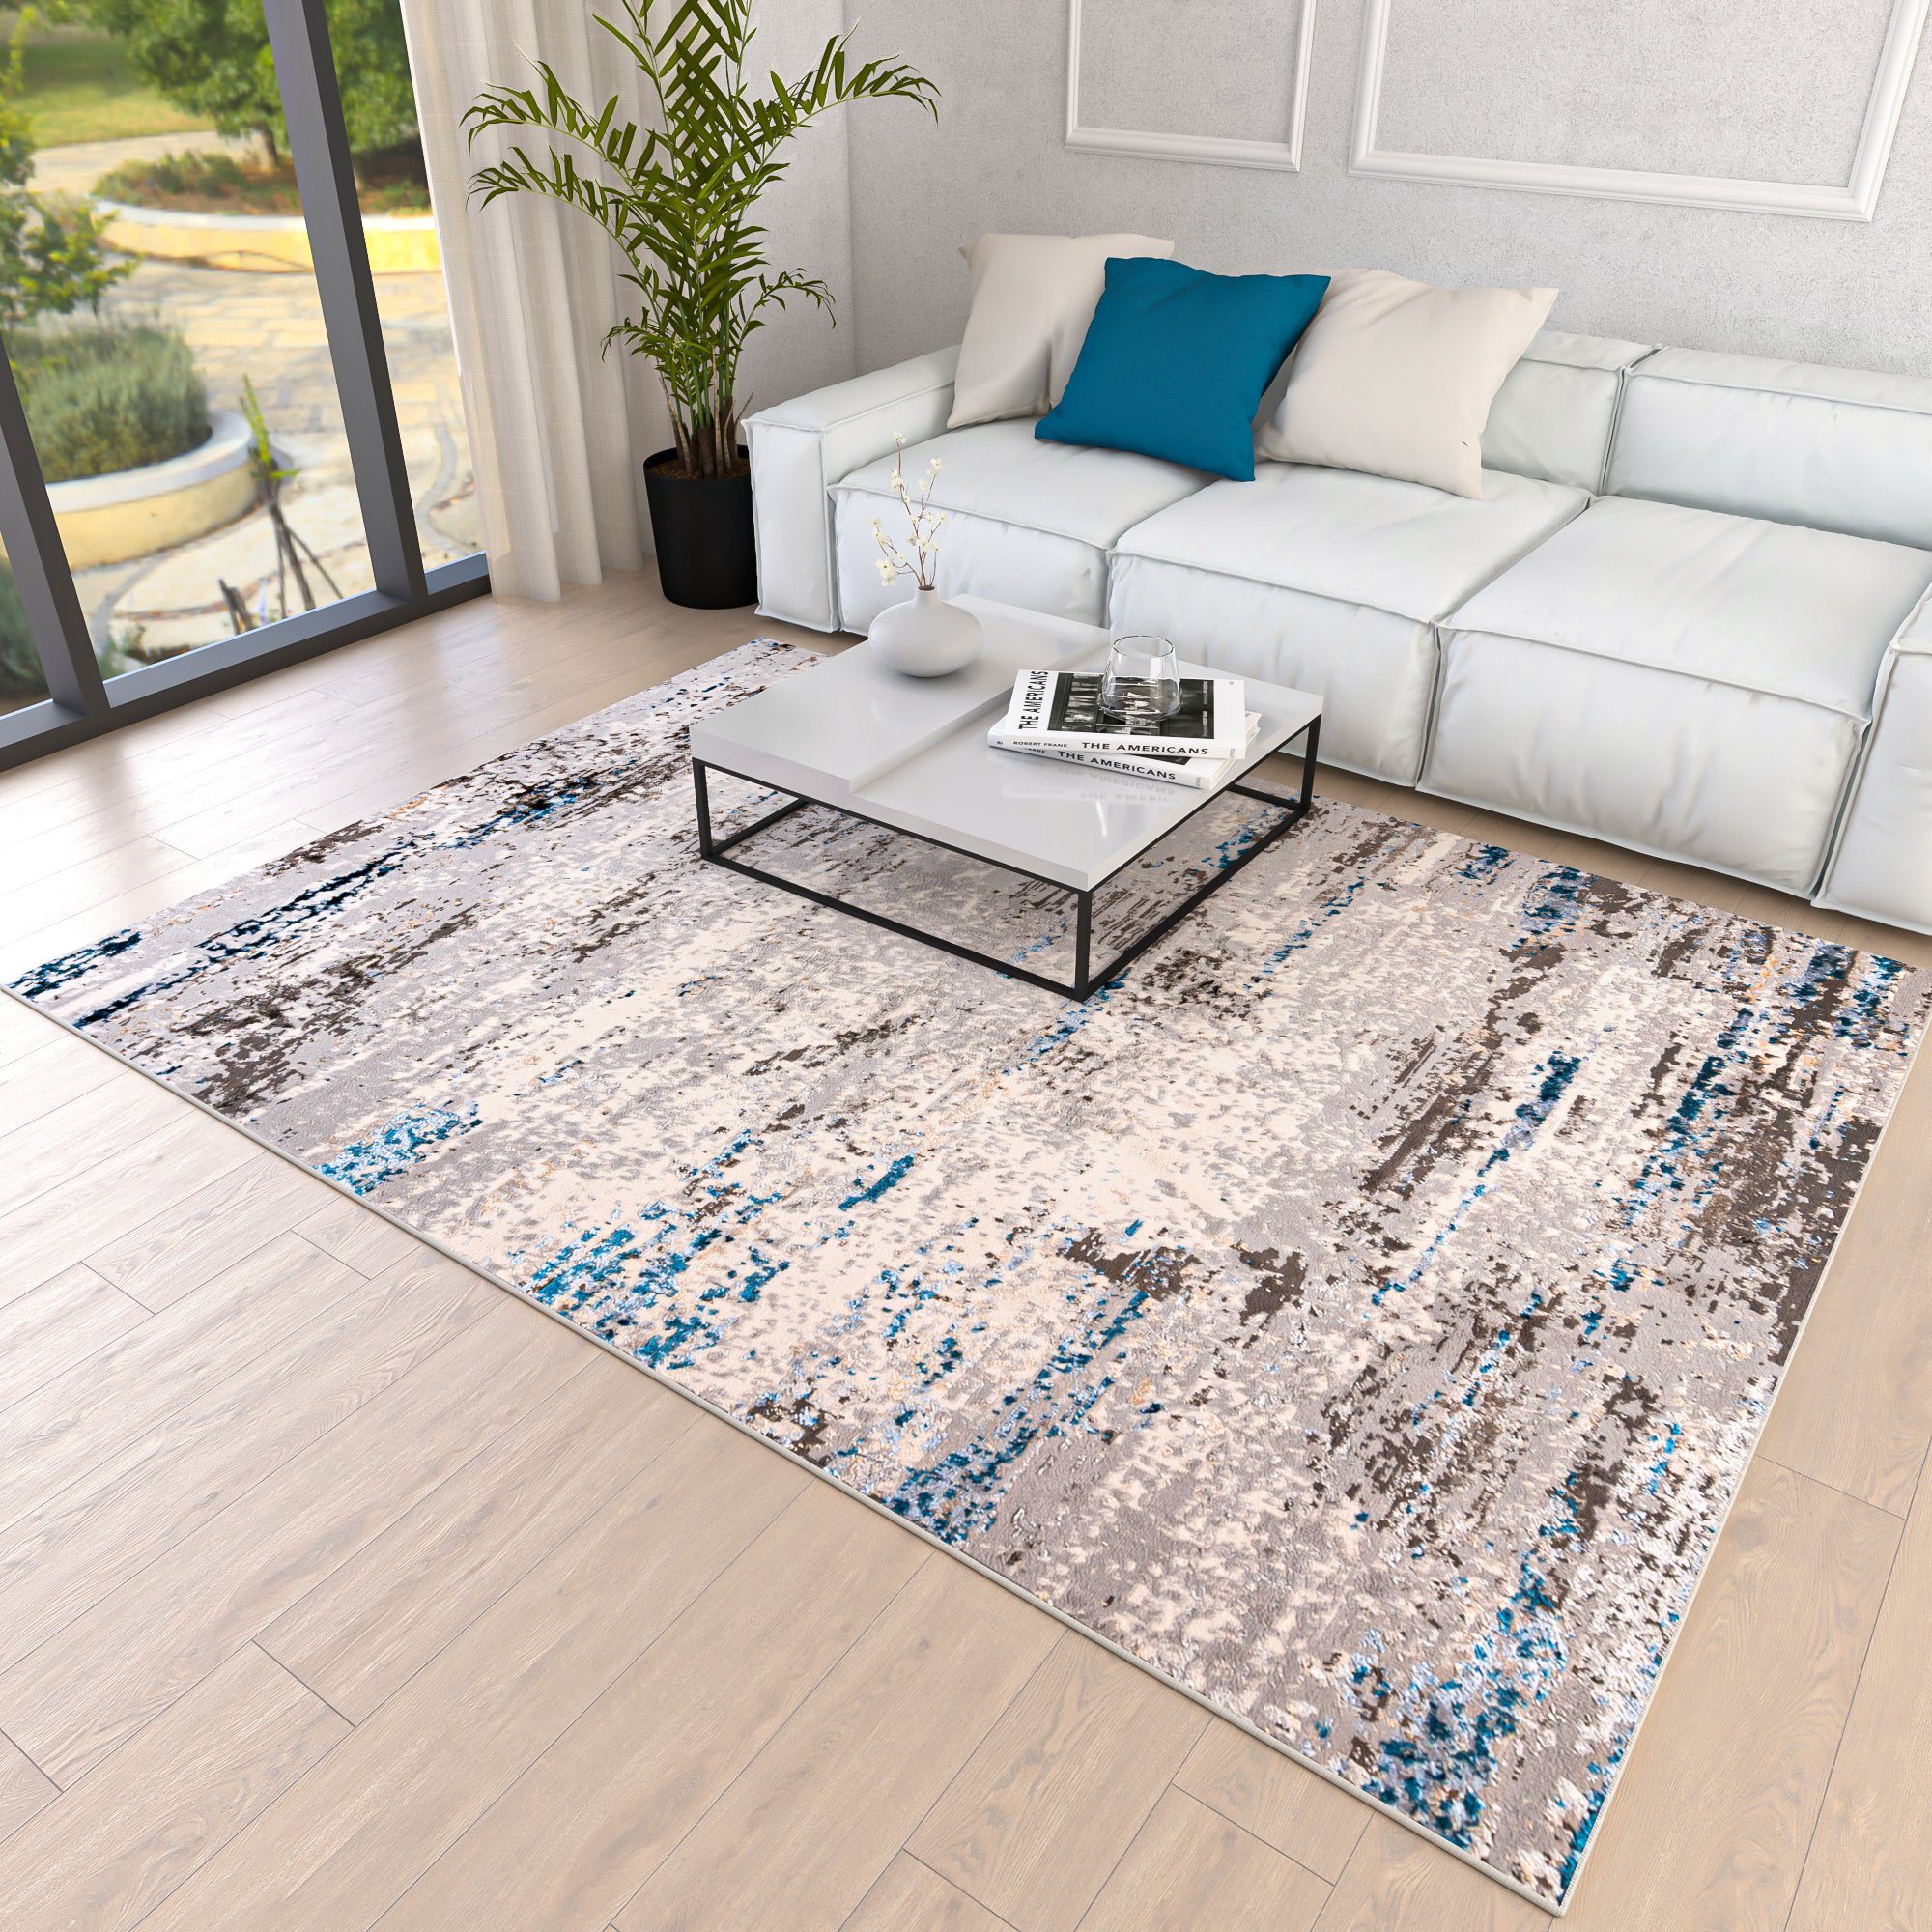 Designteppich Modern Teppich für Wohnzimmer - Abstrakt Muster, Beige Blau  Grau, Mazovia, 80 x 150 cm, Abstrakt, Modern, Höhe 8 mm, Kurzflor -  niedrige Florhöhe